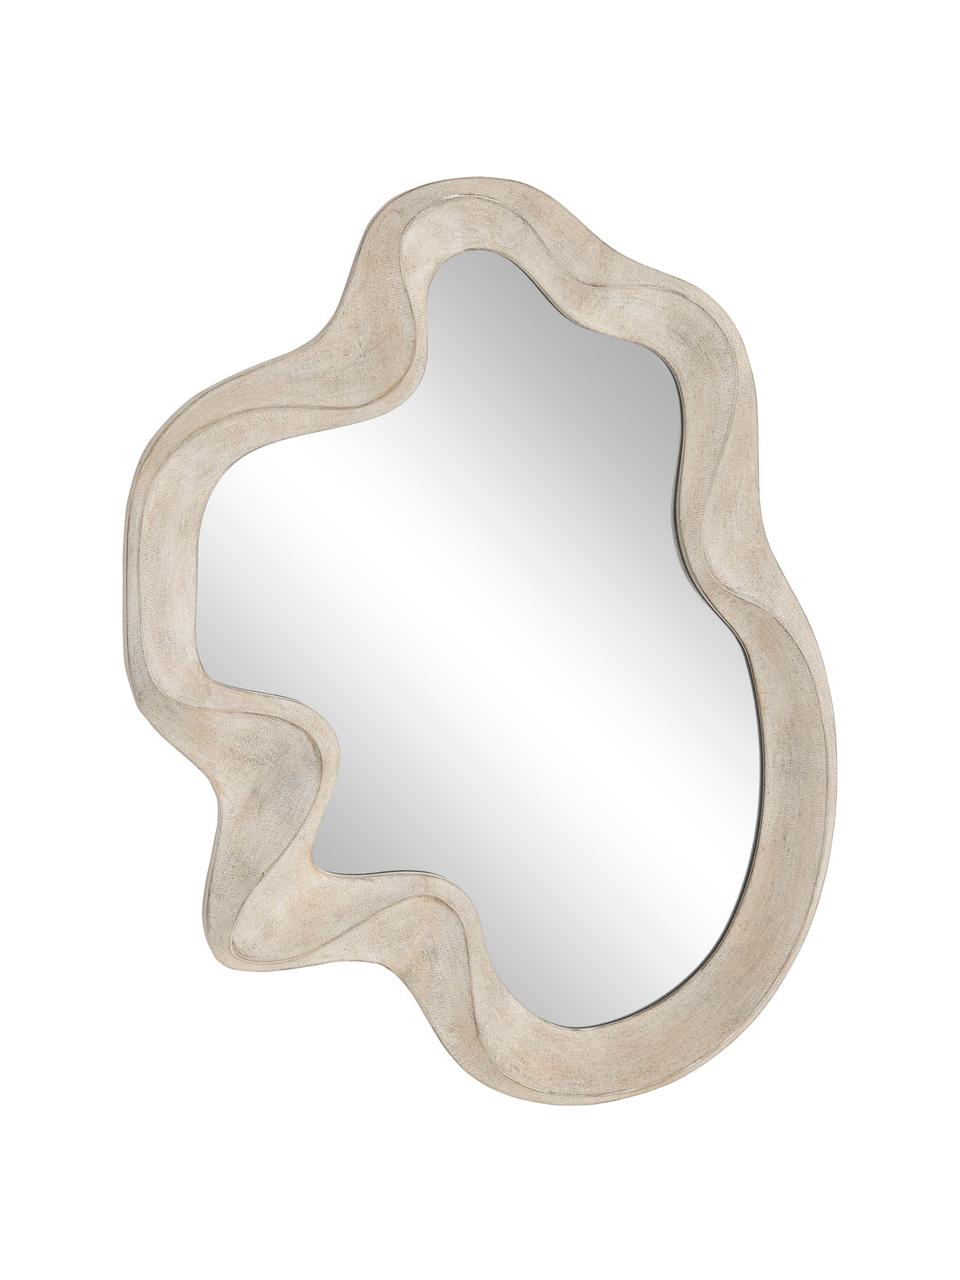 Kleiner Wandspiegel Iro in organischer Form, Spiegelfläche: Spiegelglas, Rahmen: Mitteldichte Holzfaserpla, Rückseite: Mitteldichte Holzfaserpla, Beige, B 46 x H 59 x T 3 cm